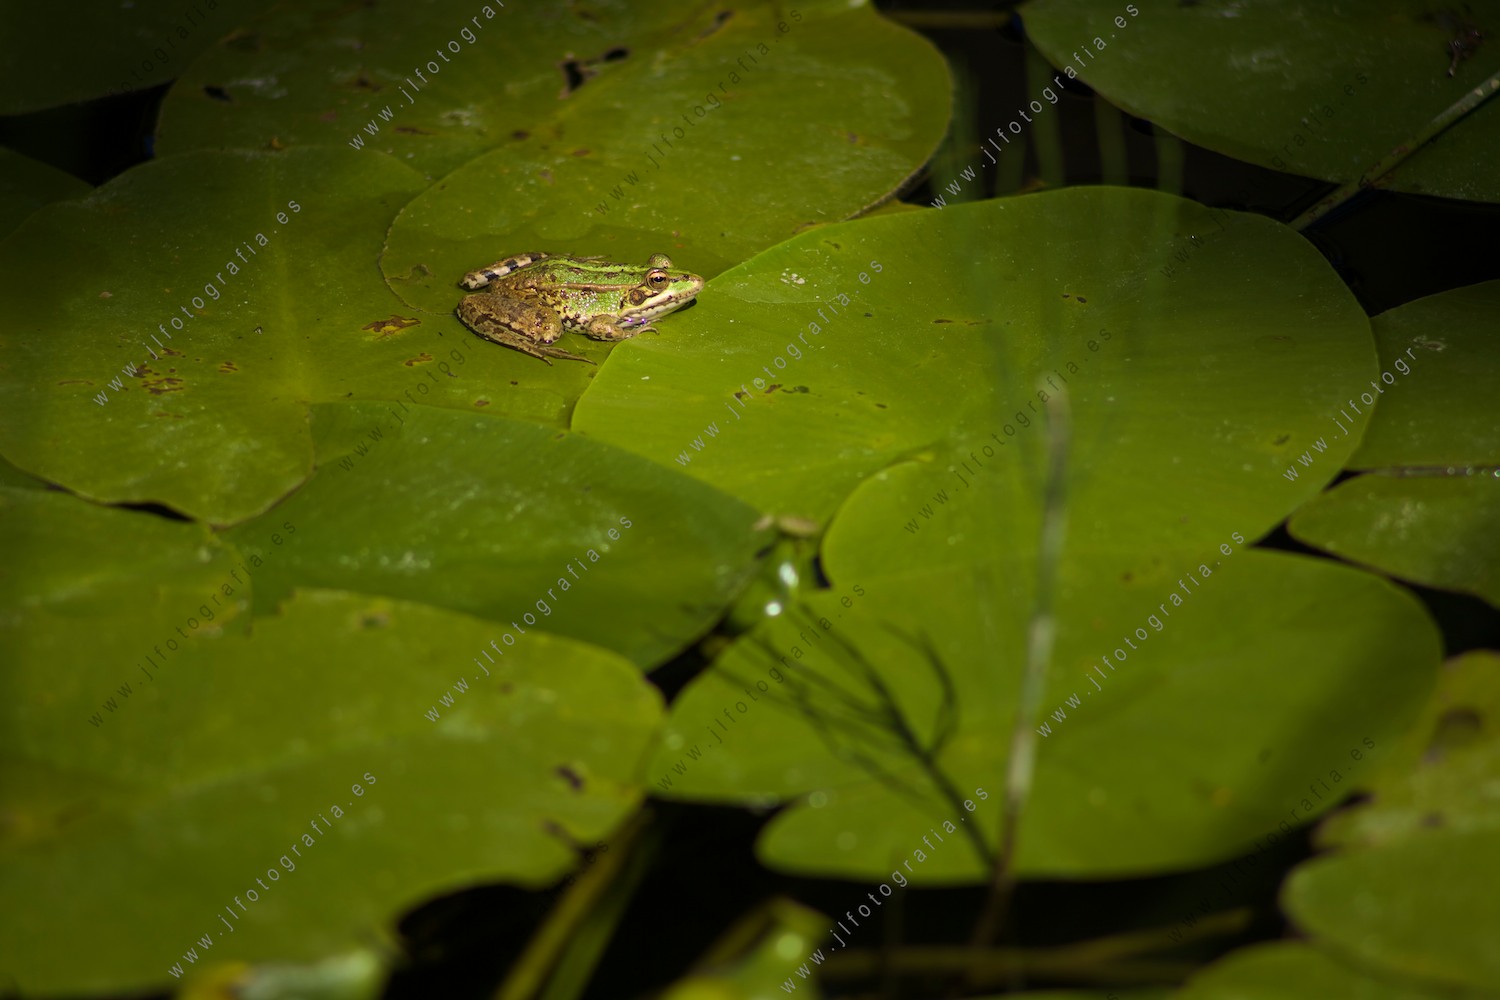 Una rana, en un nenufar del estanque esperando el paso de algún insecto con el que alimentarse